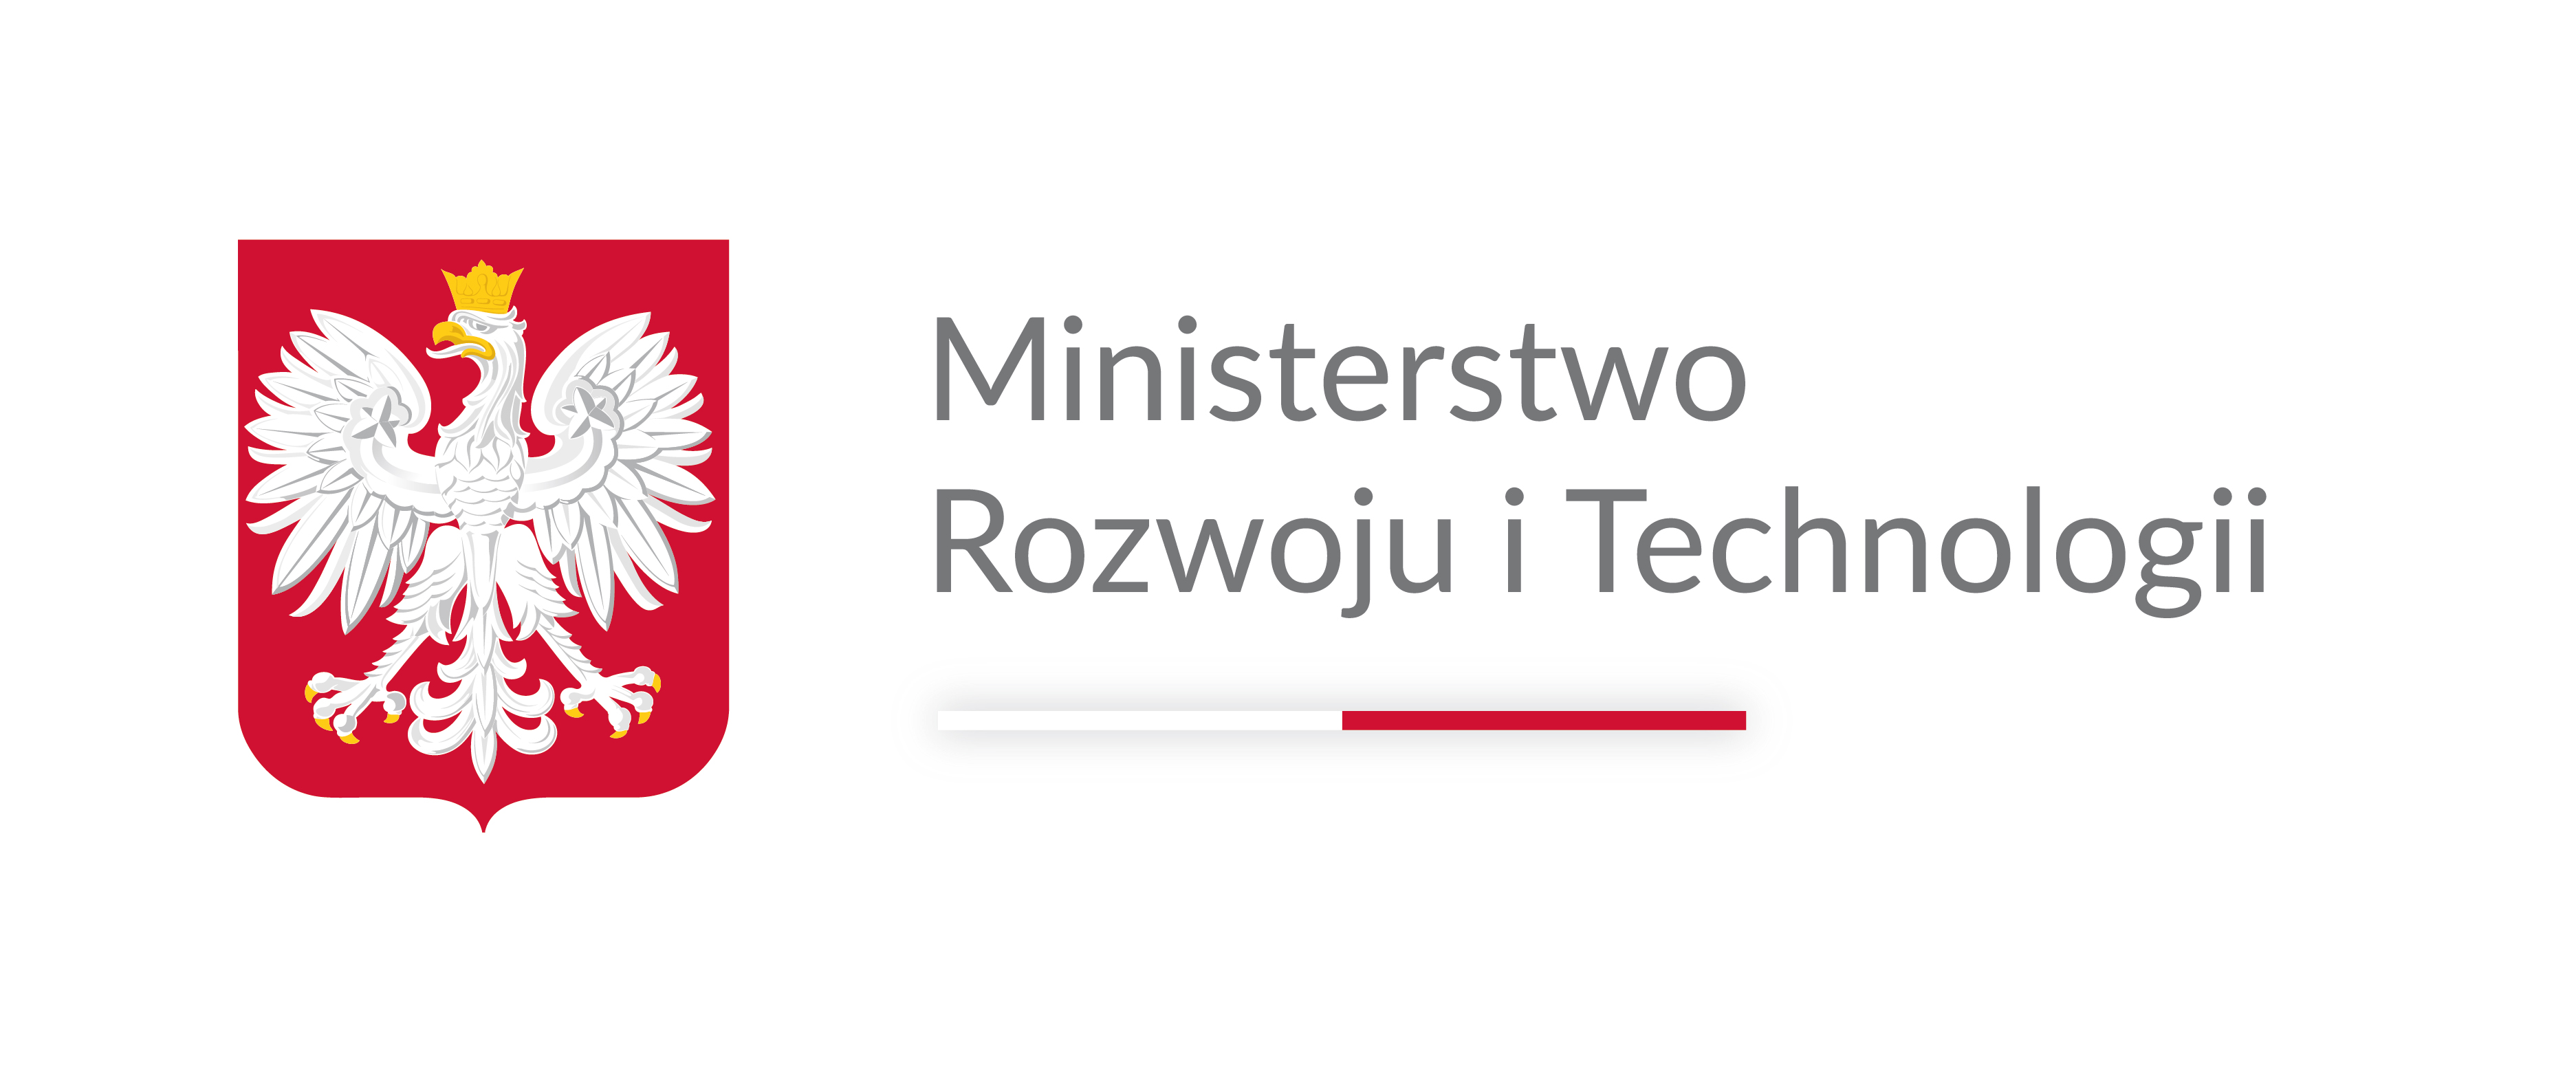 Logotyp Ministerstwo Rozwoju i Technologii